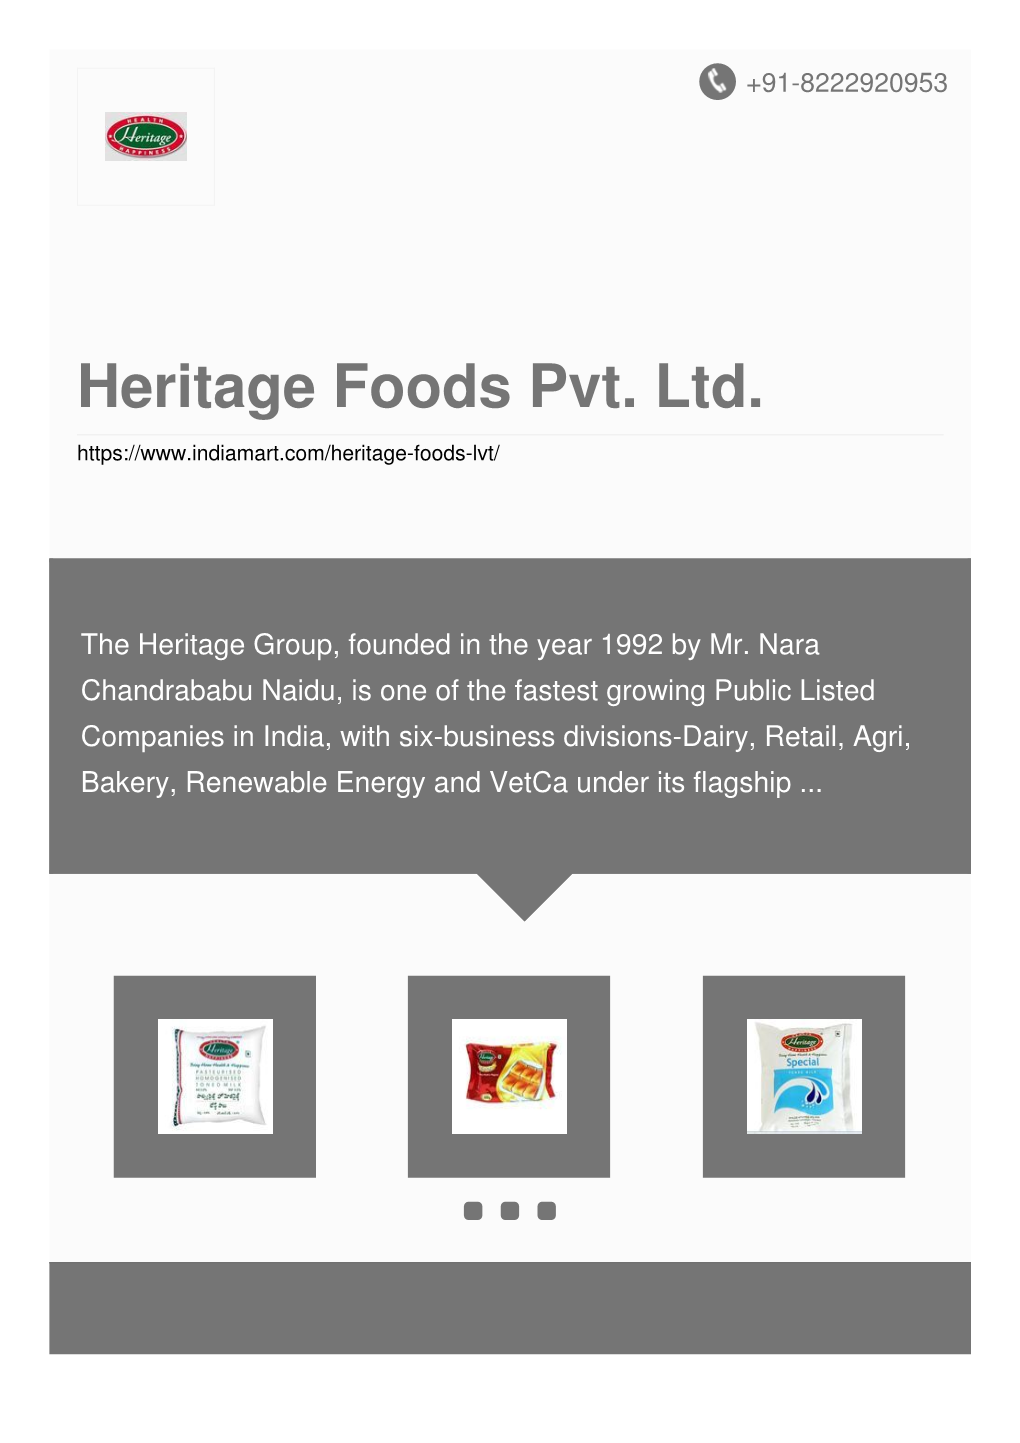 Heritage Foods Pvt. Ltd